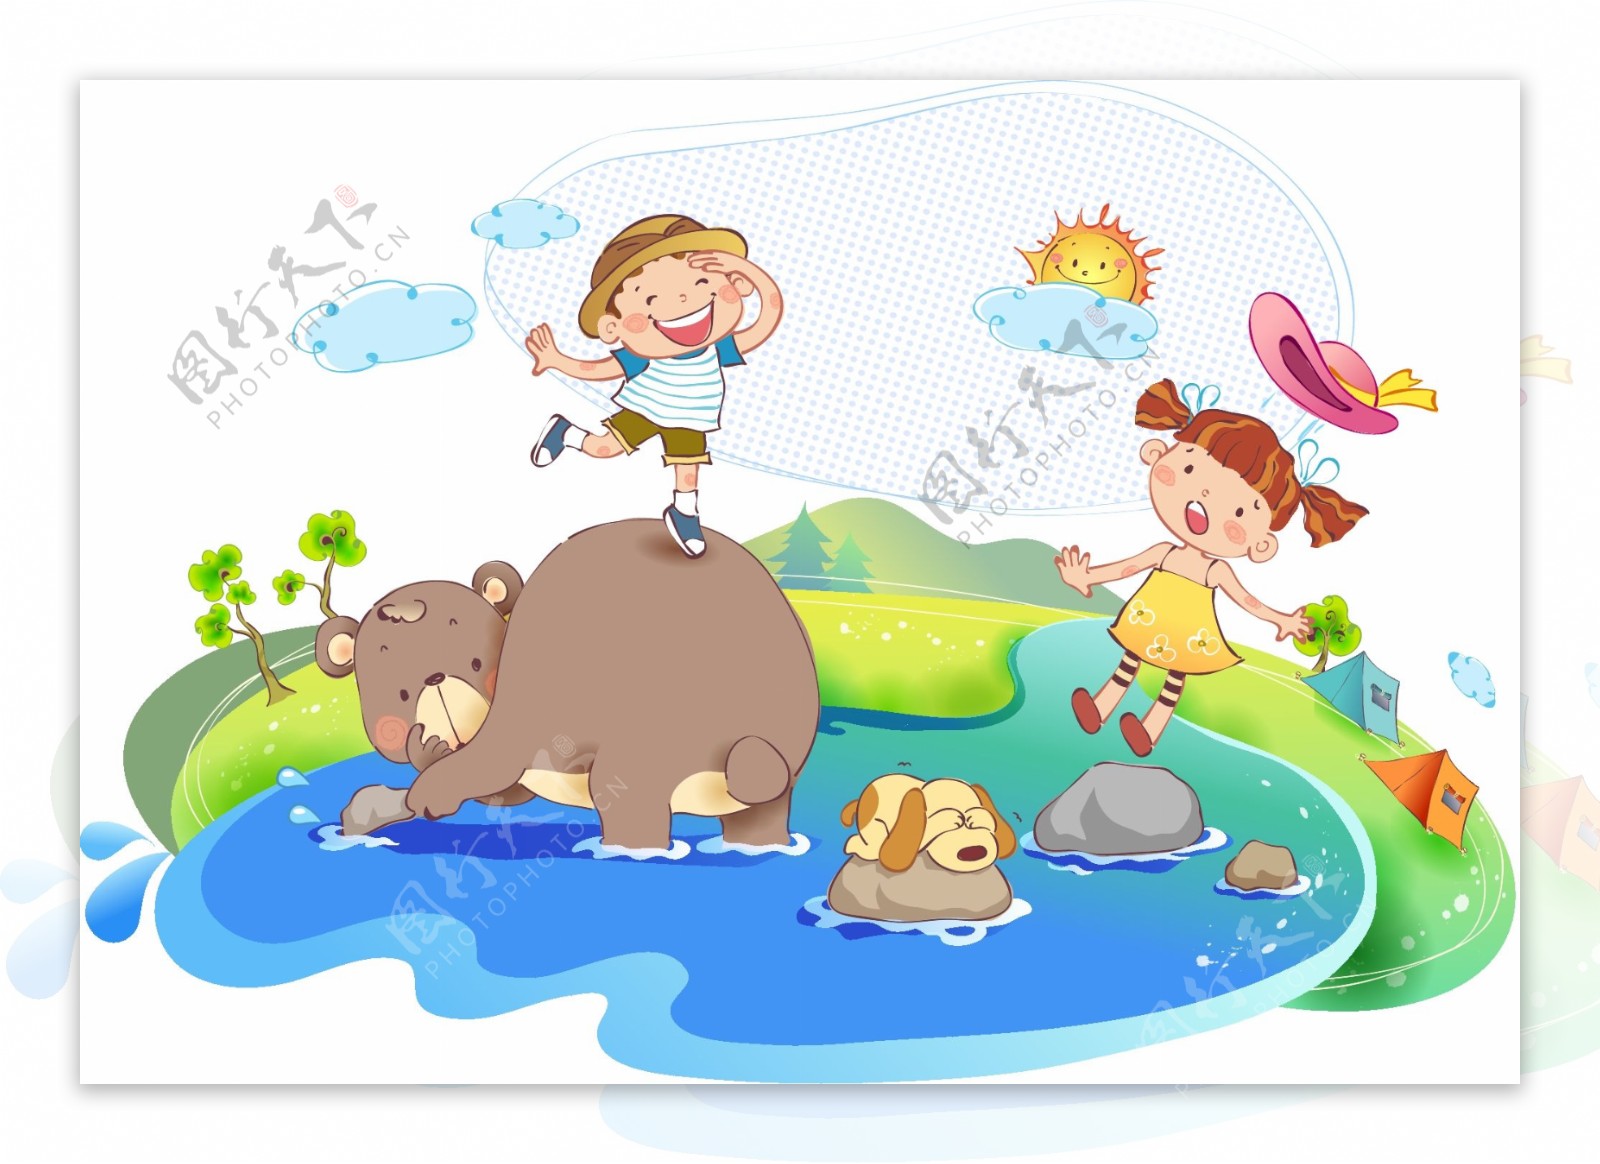 熊和孩子在小河中玩耍图片